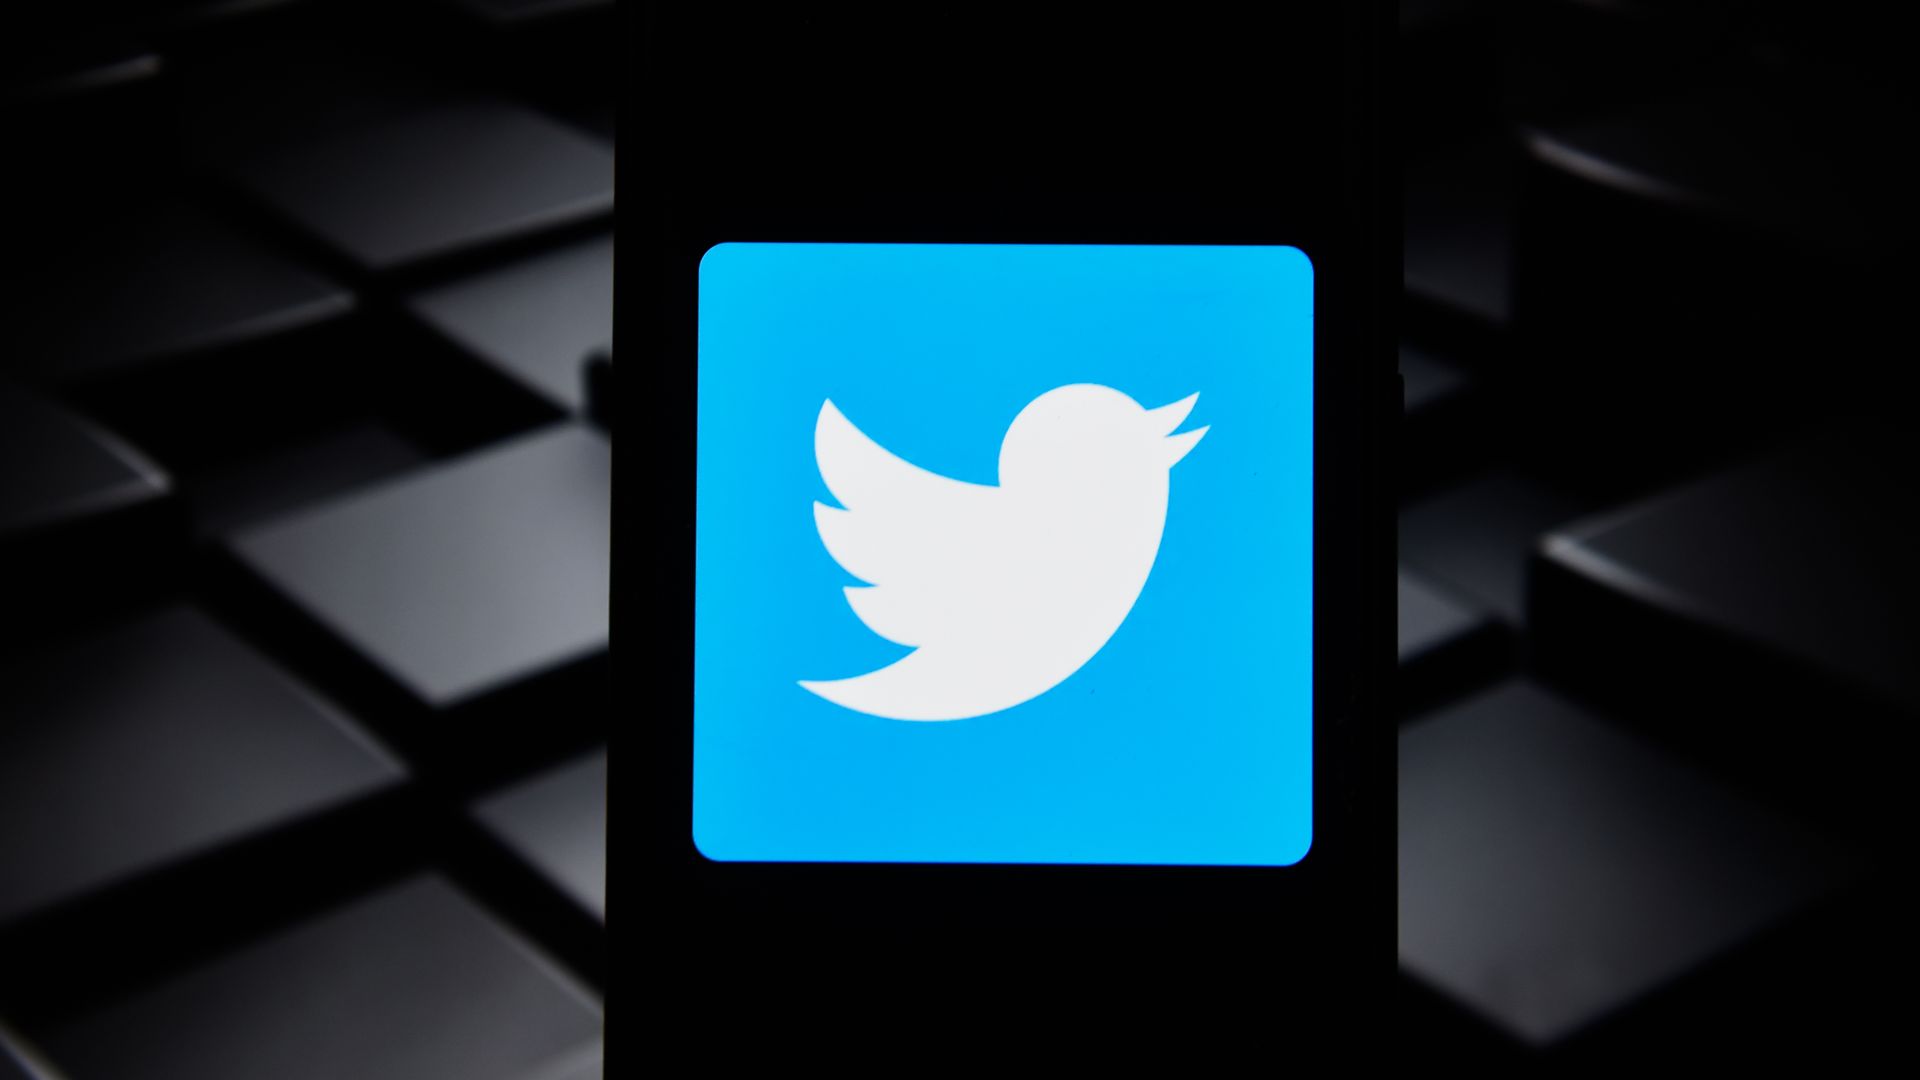 The Twitter logo.